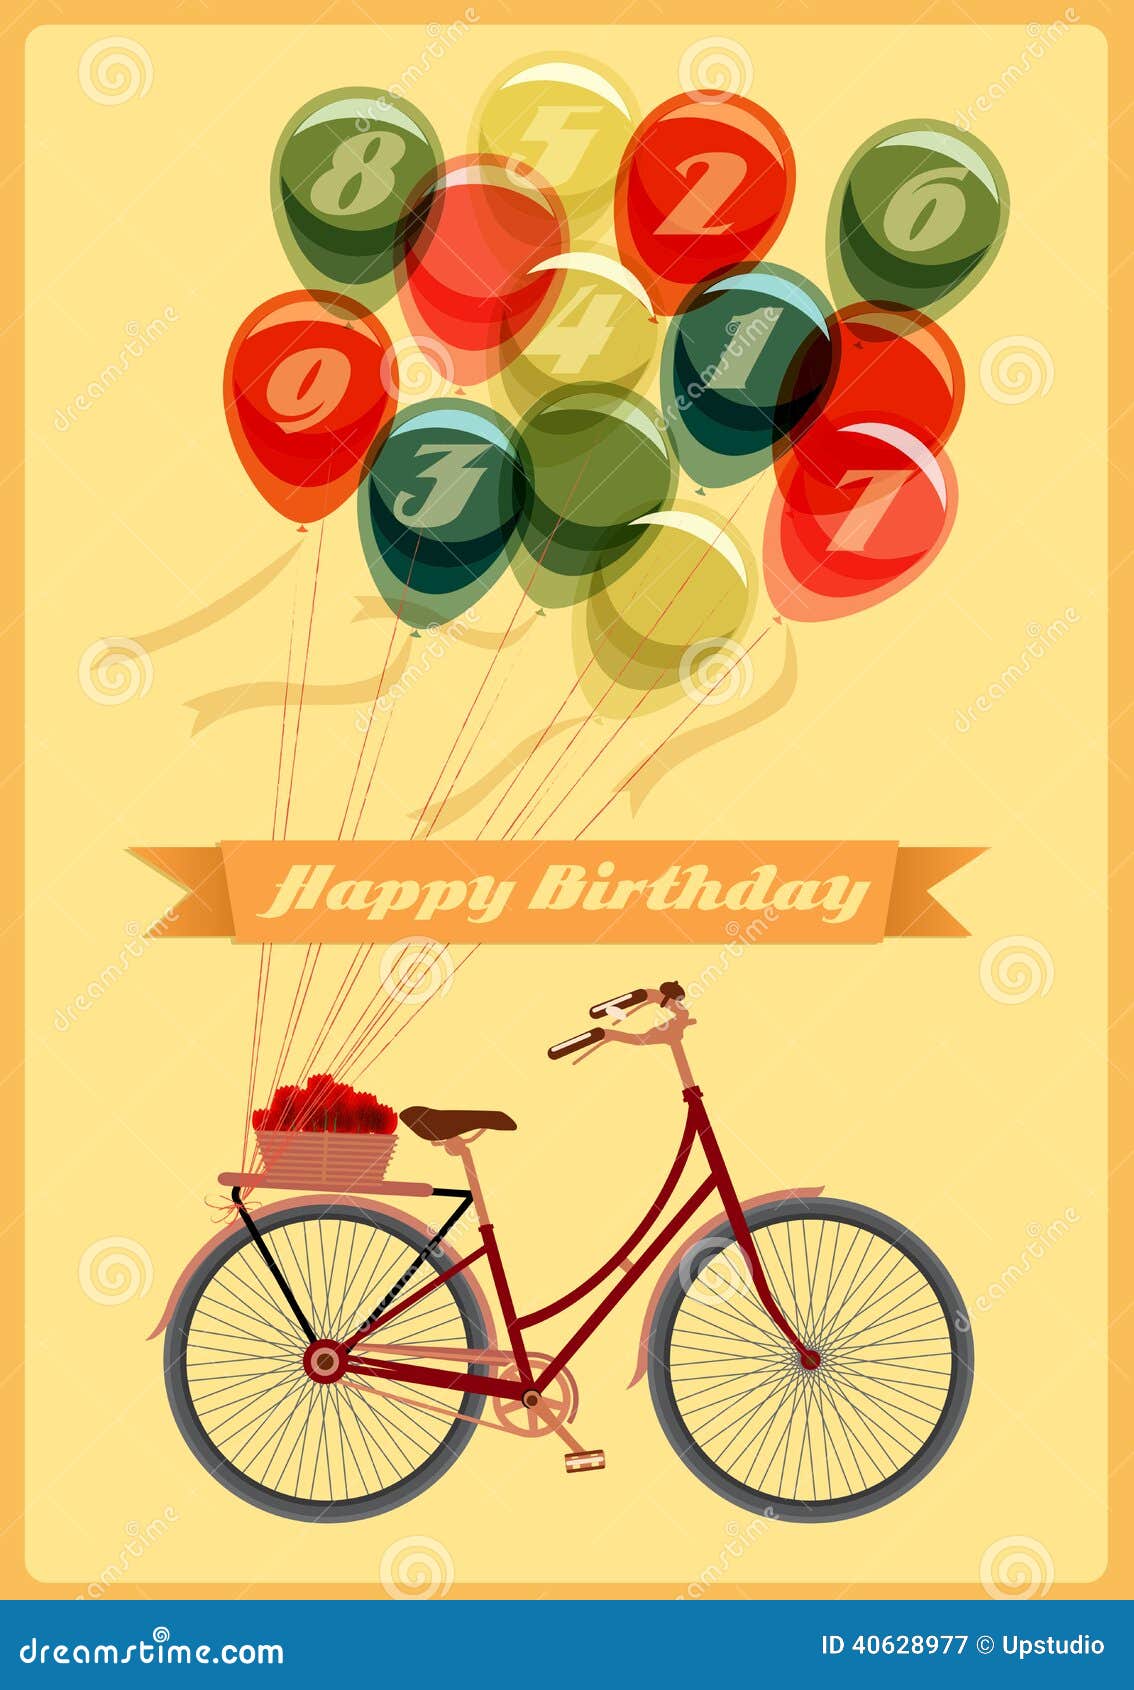 immagini buon compleanno divertenti con biciclette